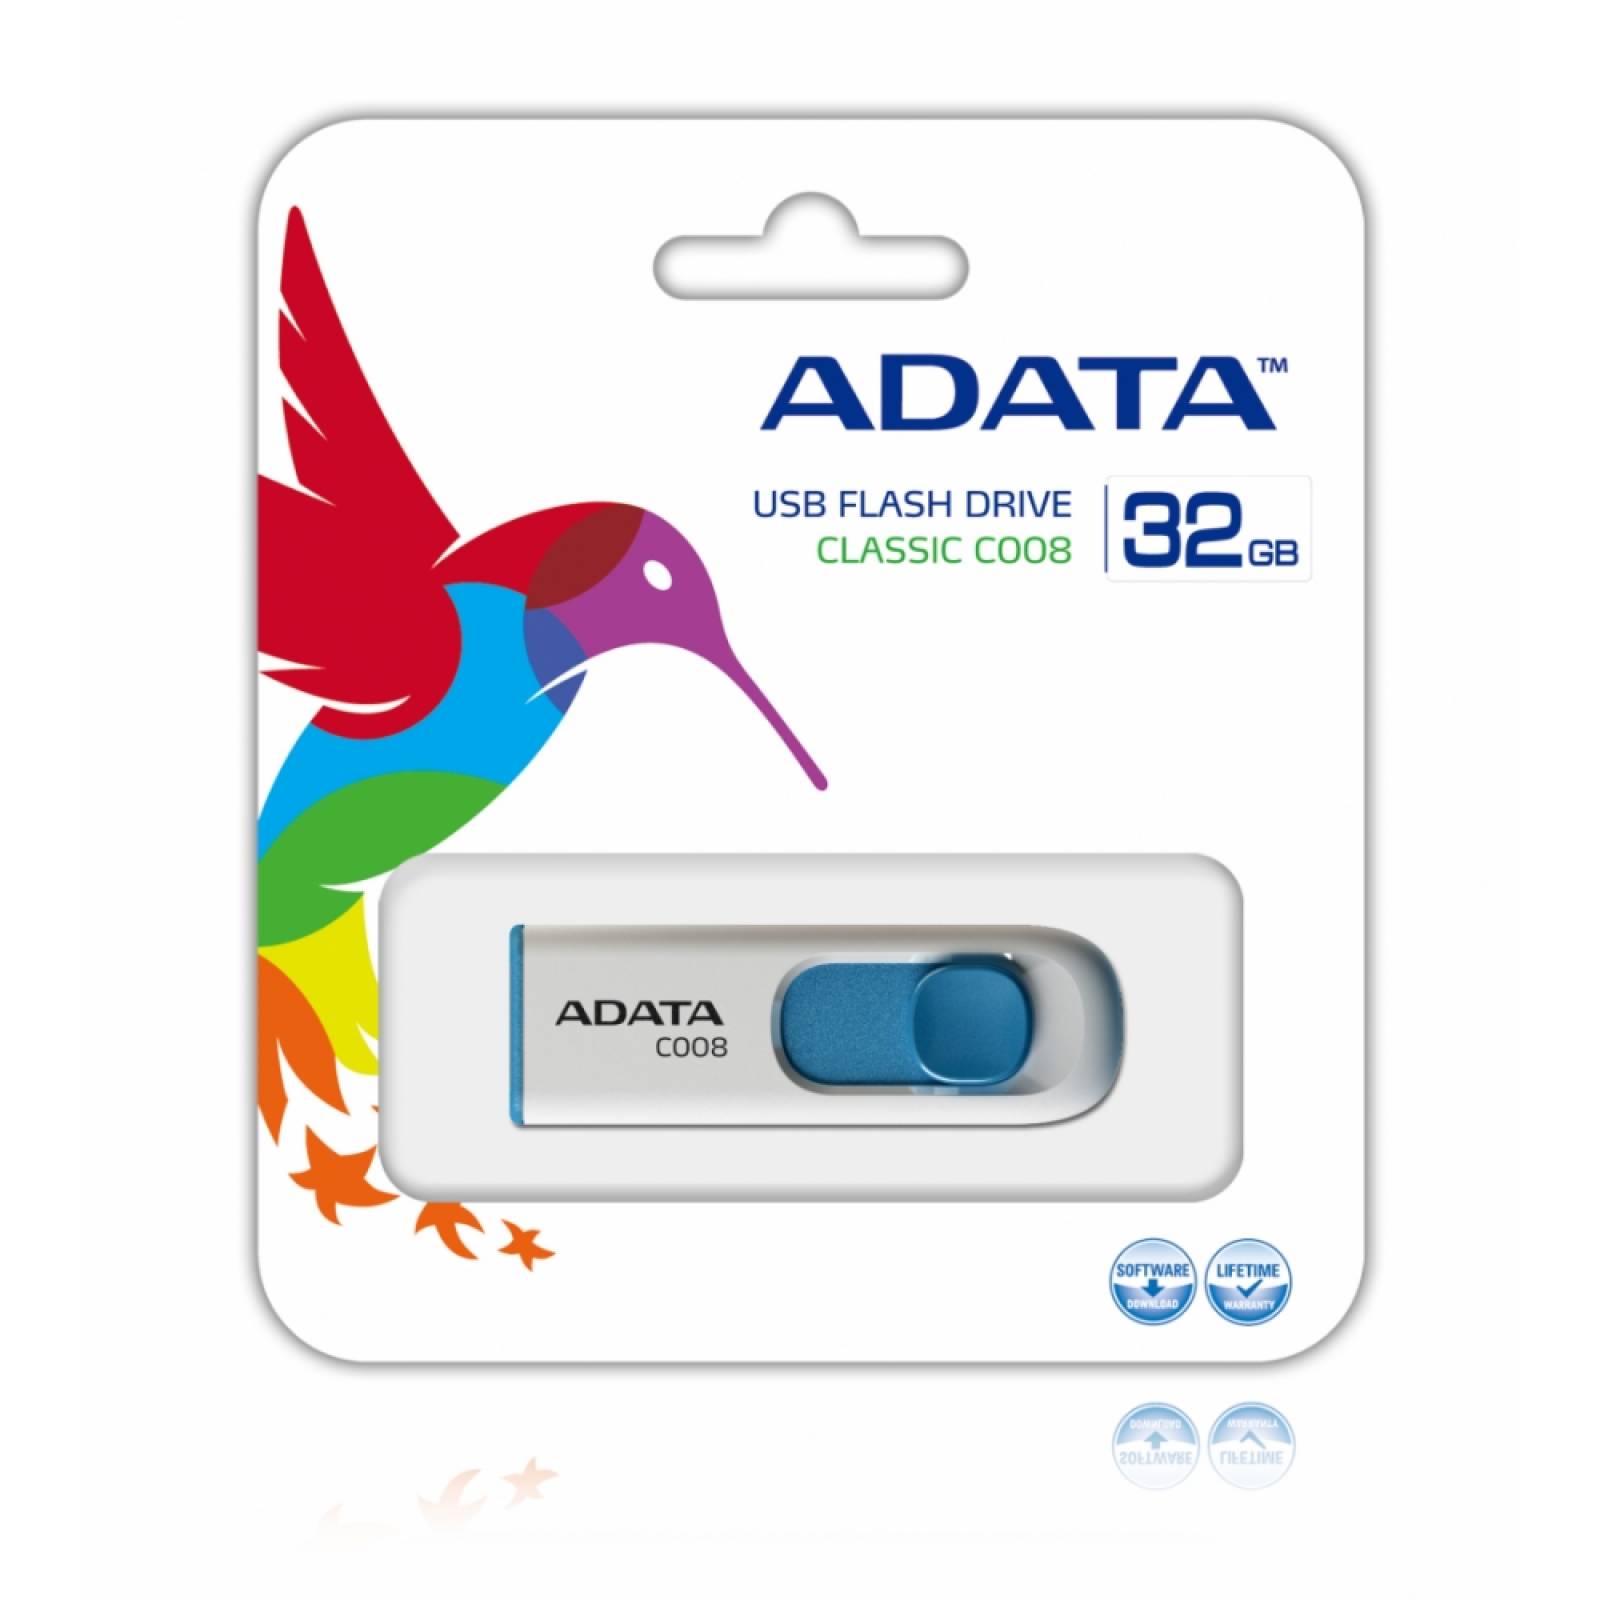 Memoria USB 2.0 Adata C008 32GB Color Blanco Azul